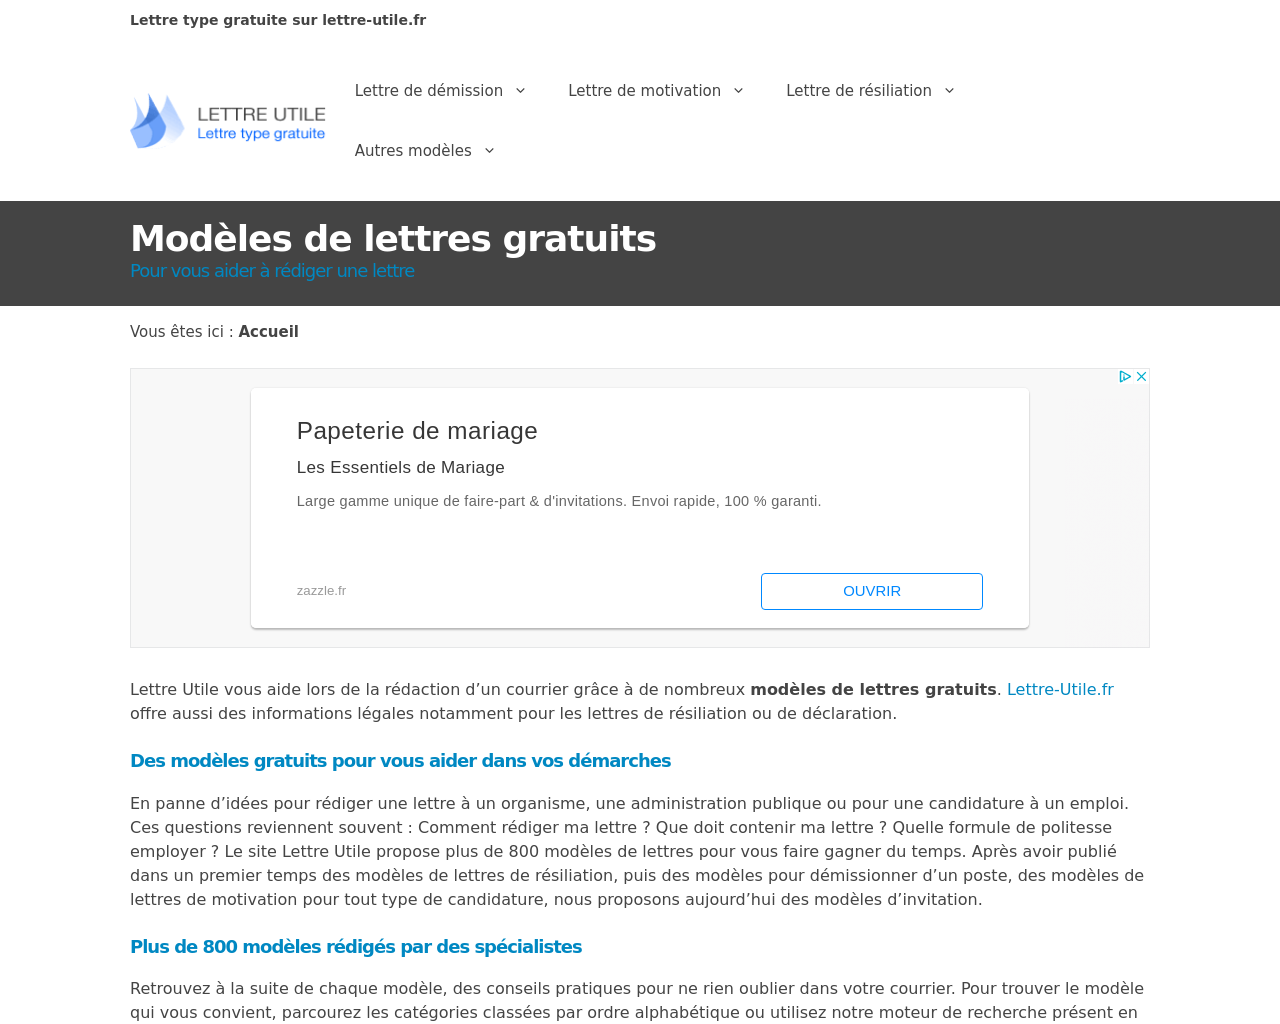 www.lettre-utile.fr